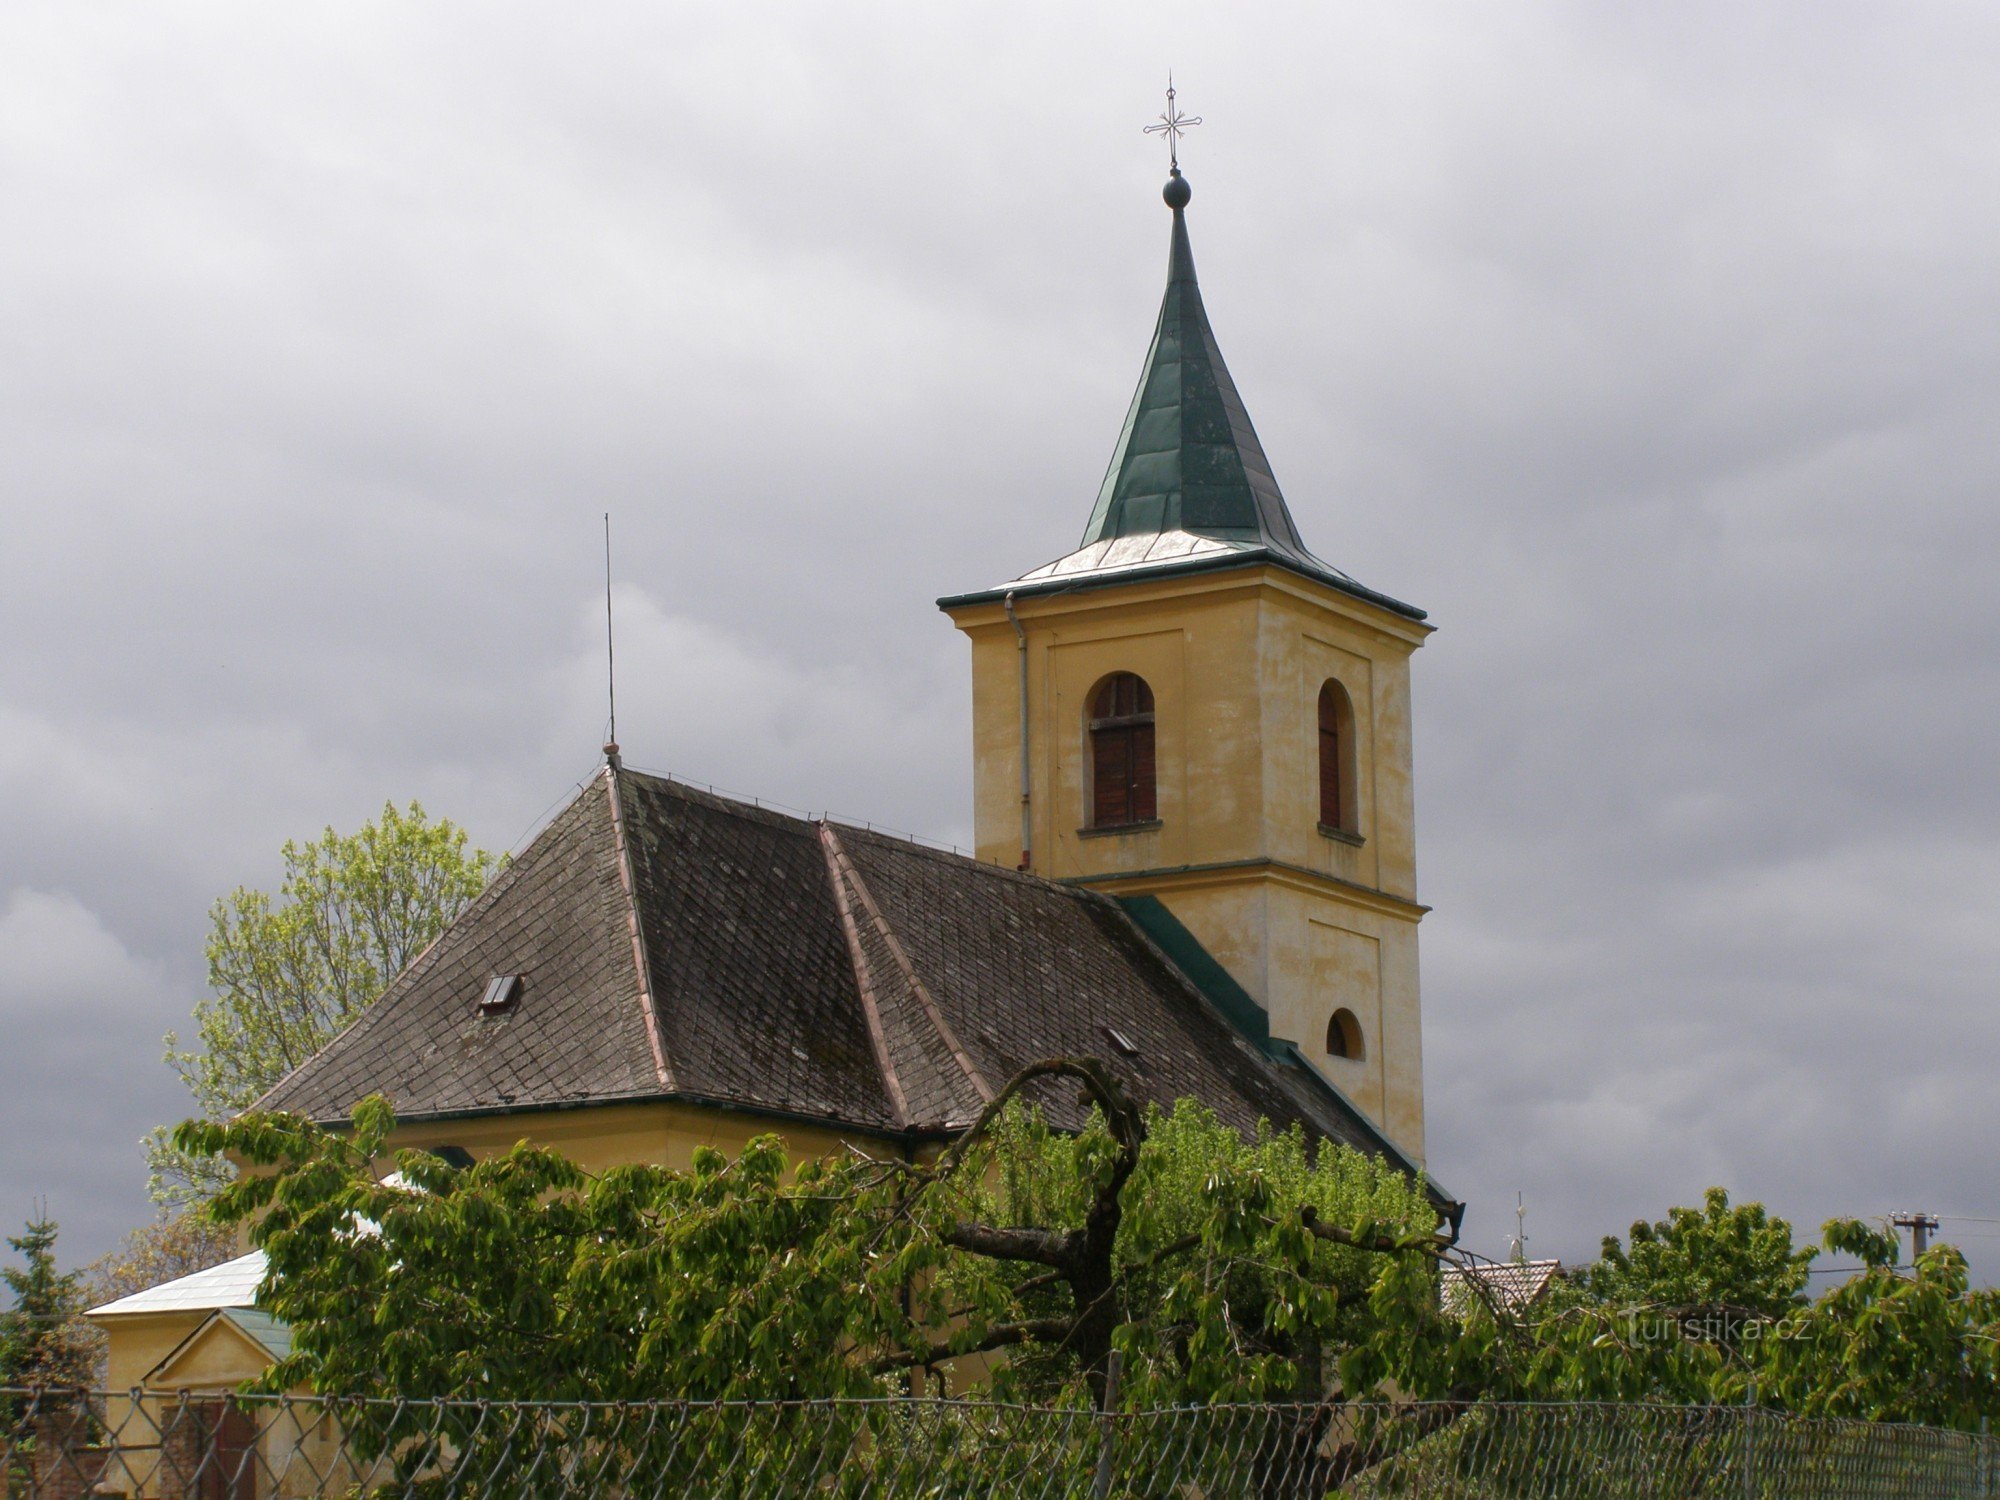 ボハリネ - 聖教会バーソロミュー